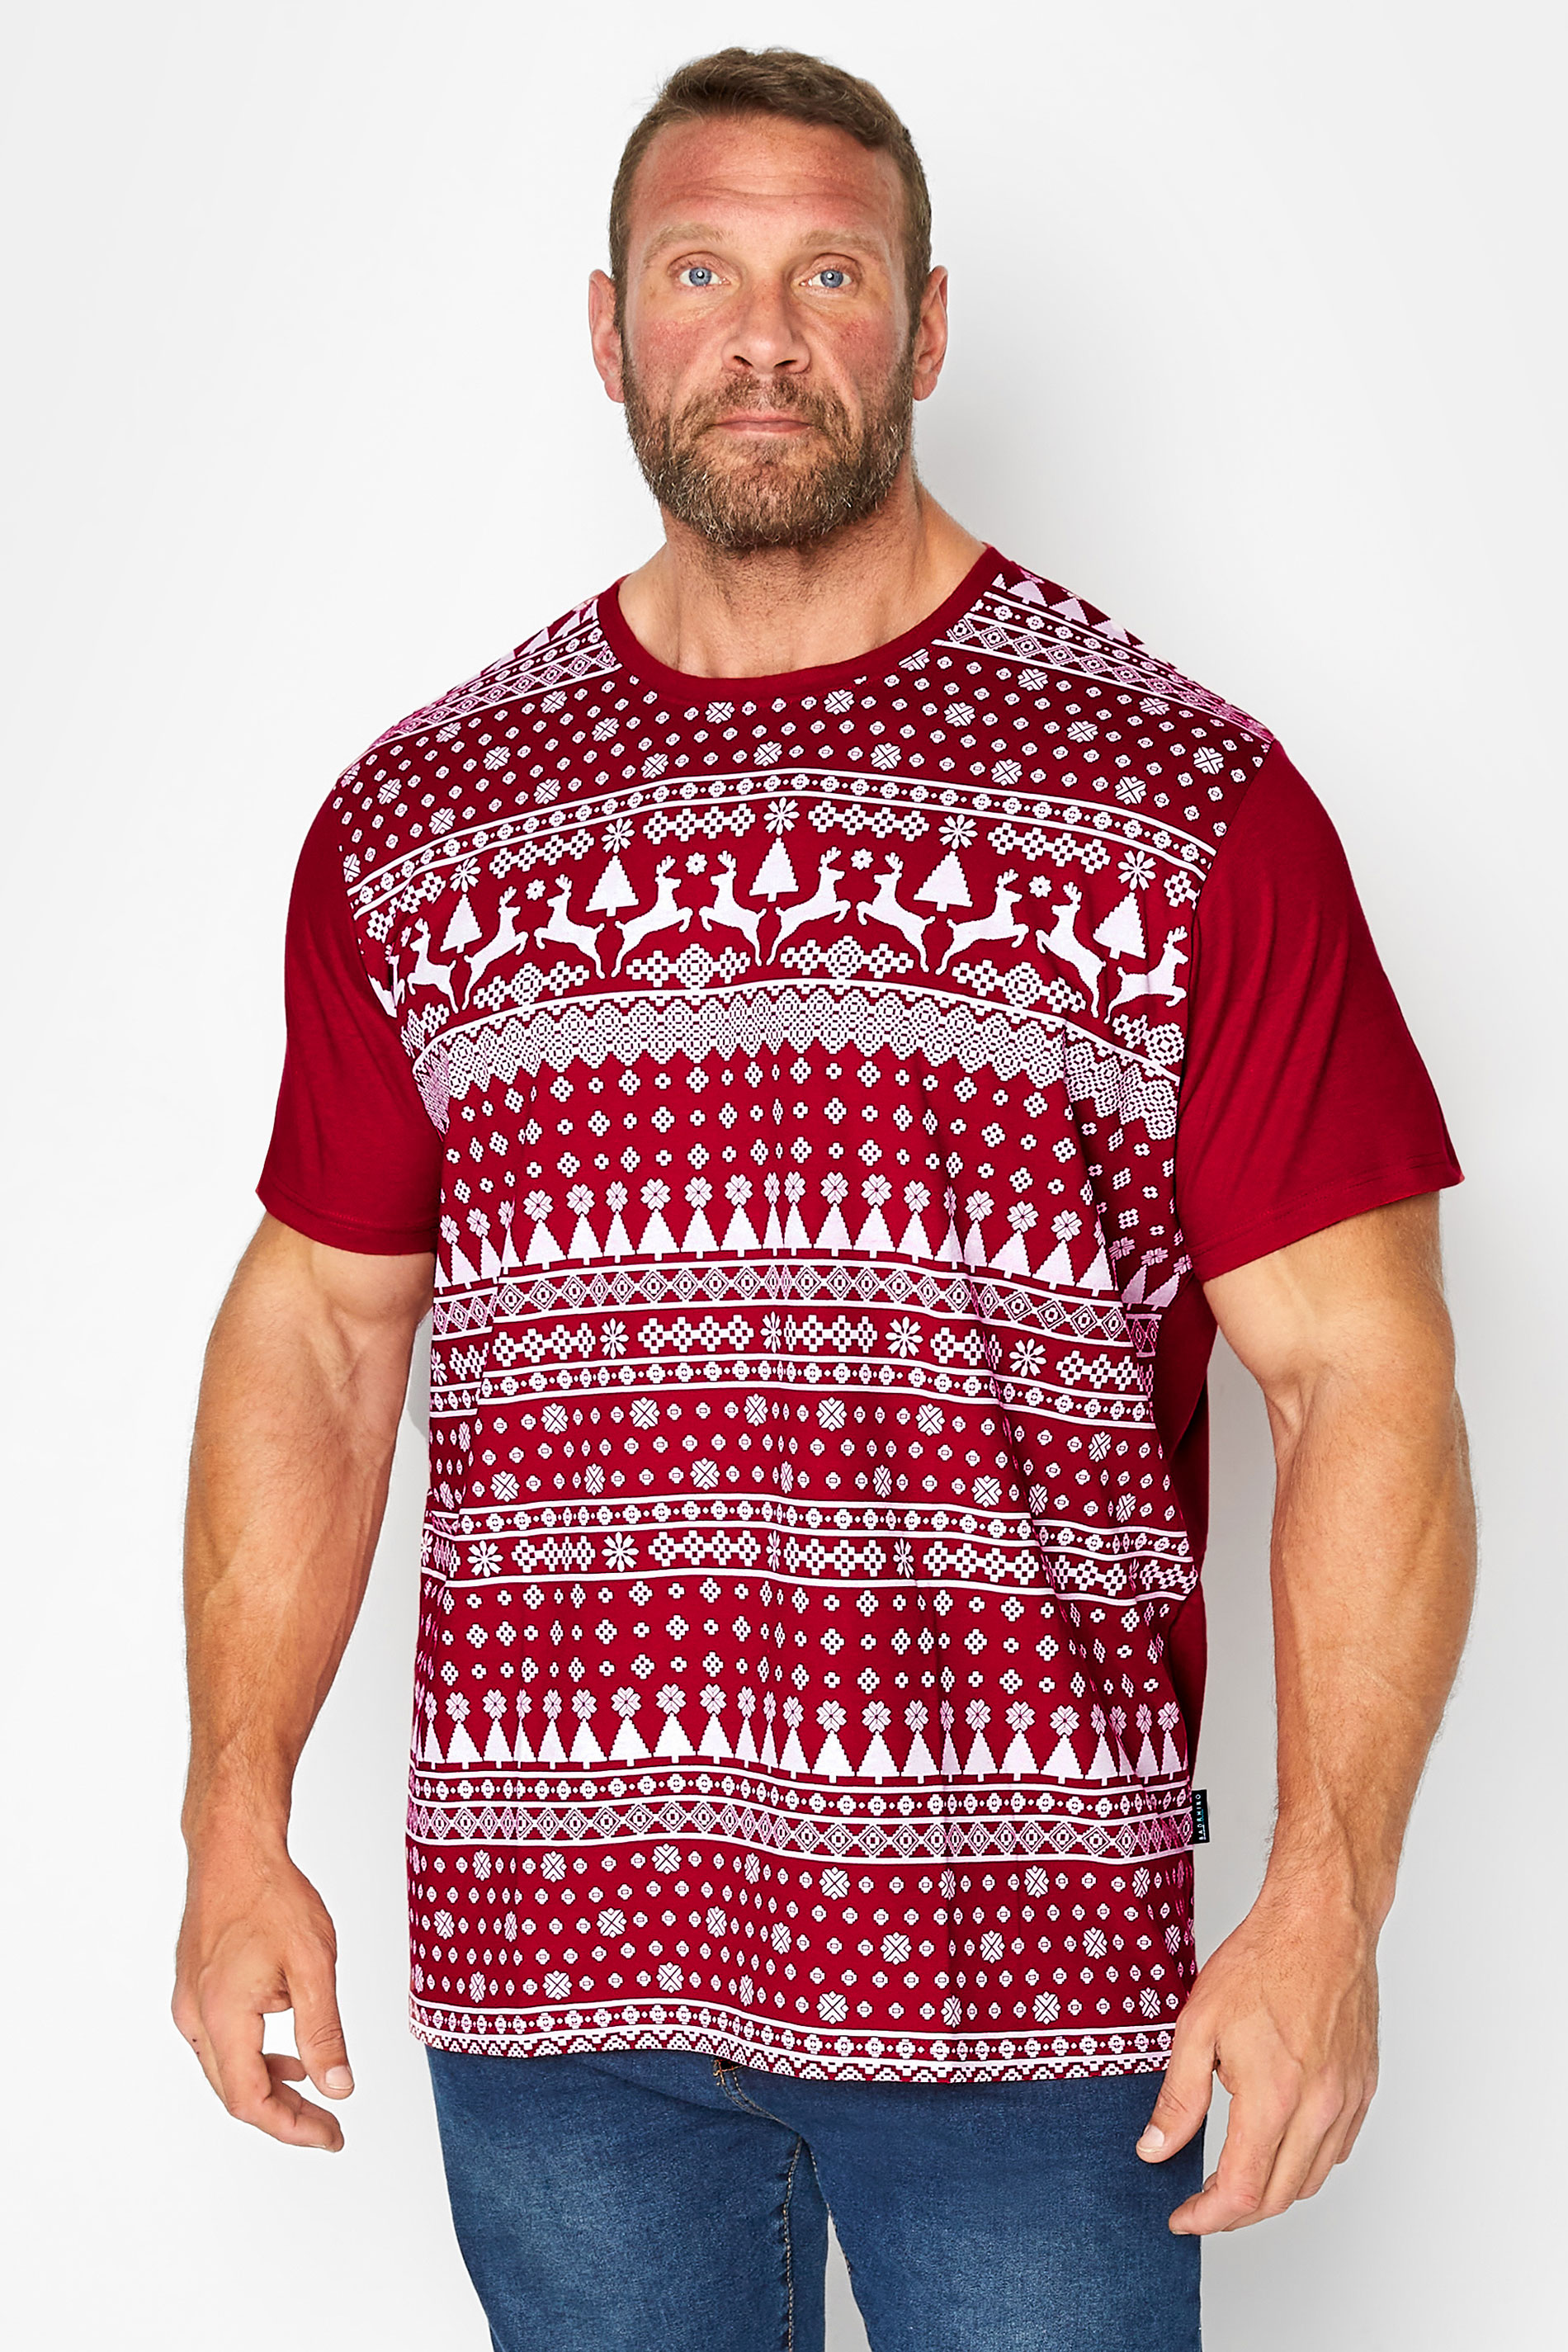 BadRhino Big & Tall Red & White Fairlise Christmas T-Shirt | BadRhino 1